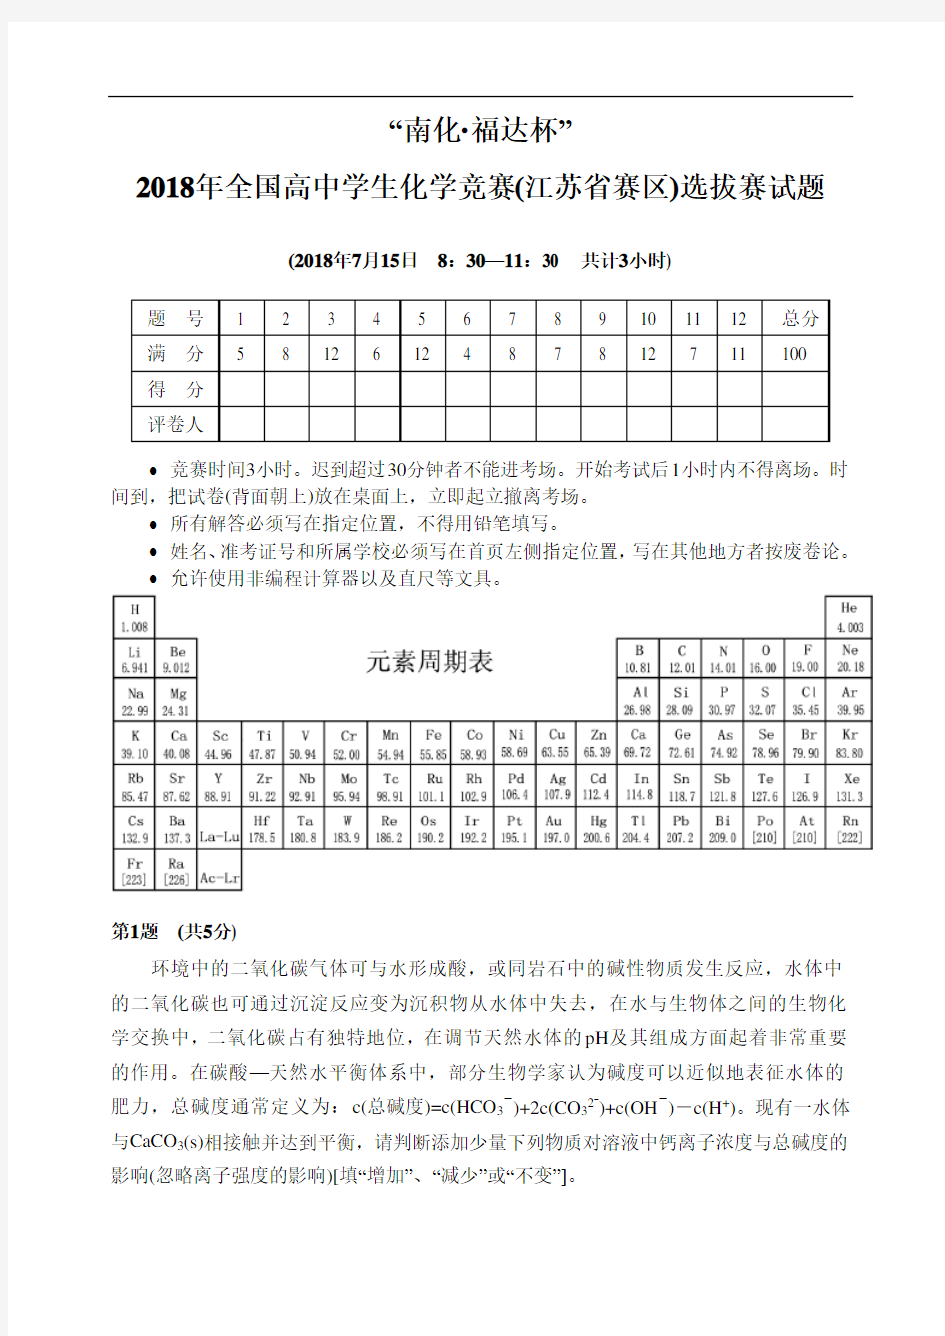 高中化学竞赛试题-2018年全国高中学生化学竞赛(江苏省赛区)选拔赛试题 最新